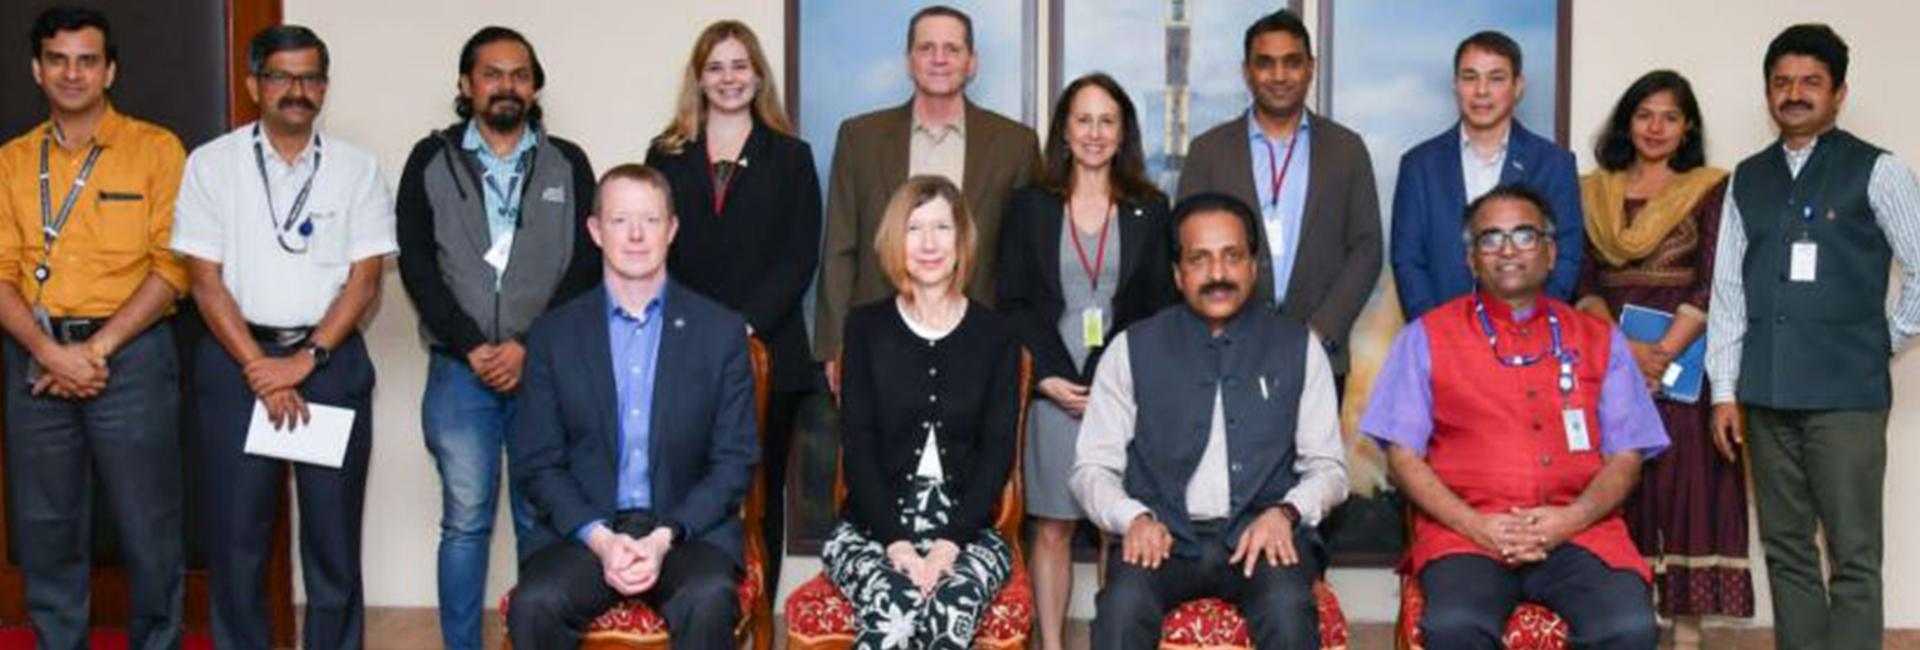 Kathryn Lueders, pentadbir bersekutu untuk pengarah misi operasi angkasa lepas di NASA sedang dalam lawatan ke India. Dia melawat ISRO dan bertemu pengerusi S Somnath, pengarah penerbangan angkasa manusia Dr Umamaheswaran R, dan ahli tenaga kerja ISRO yang lain.